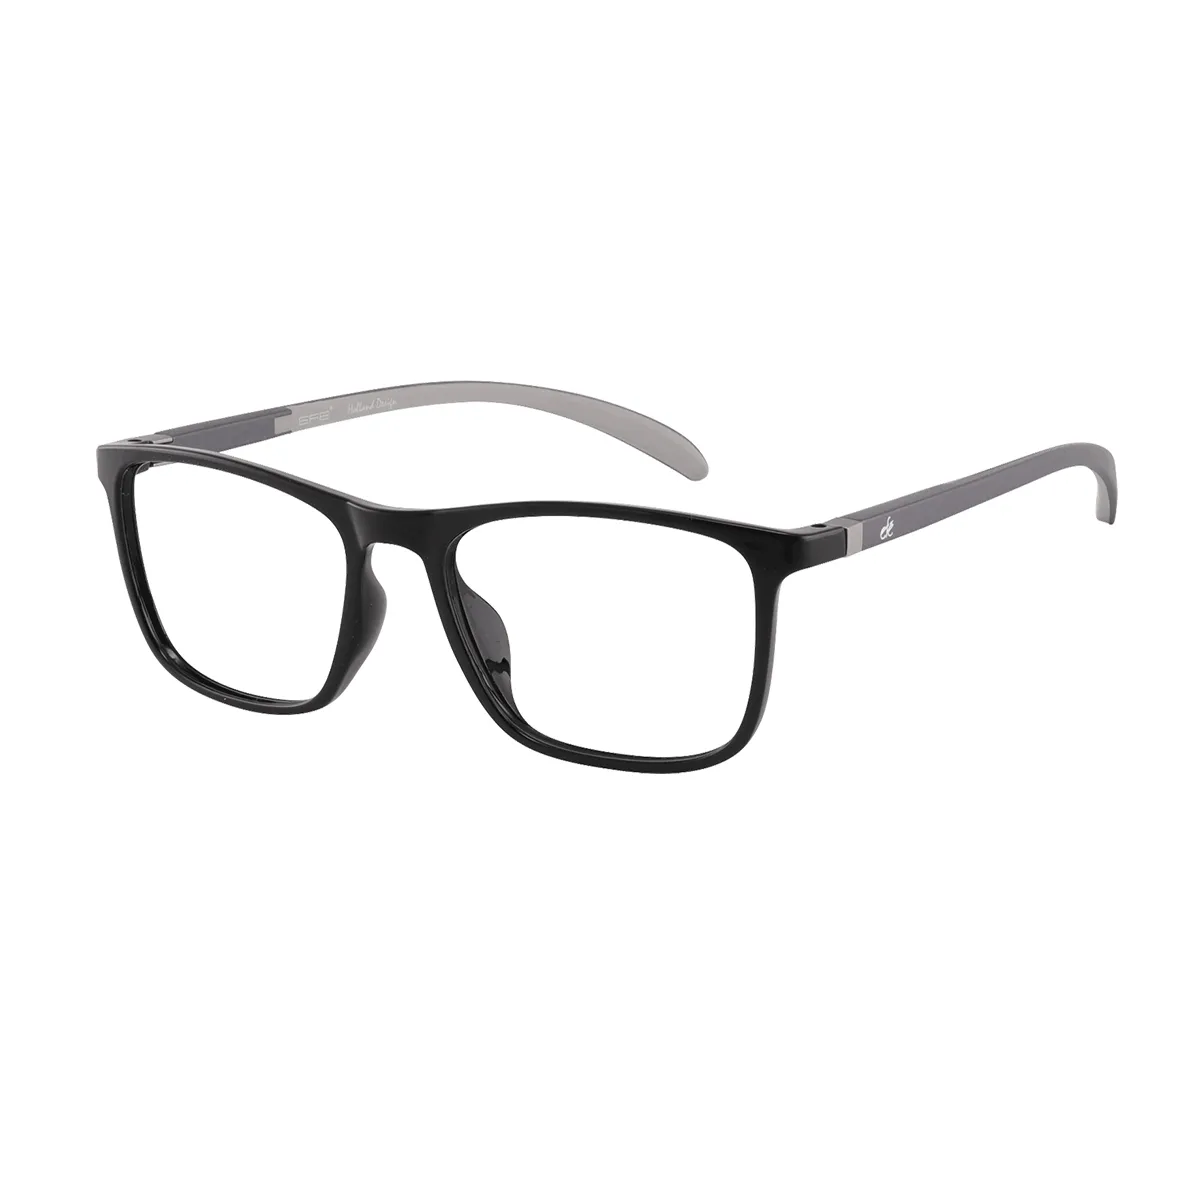 McClure - Rectangle Black Glasses for Men & Women